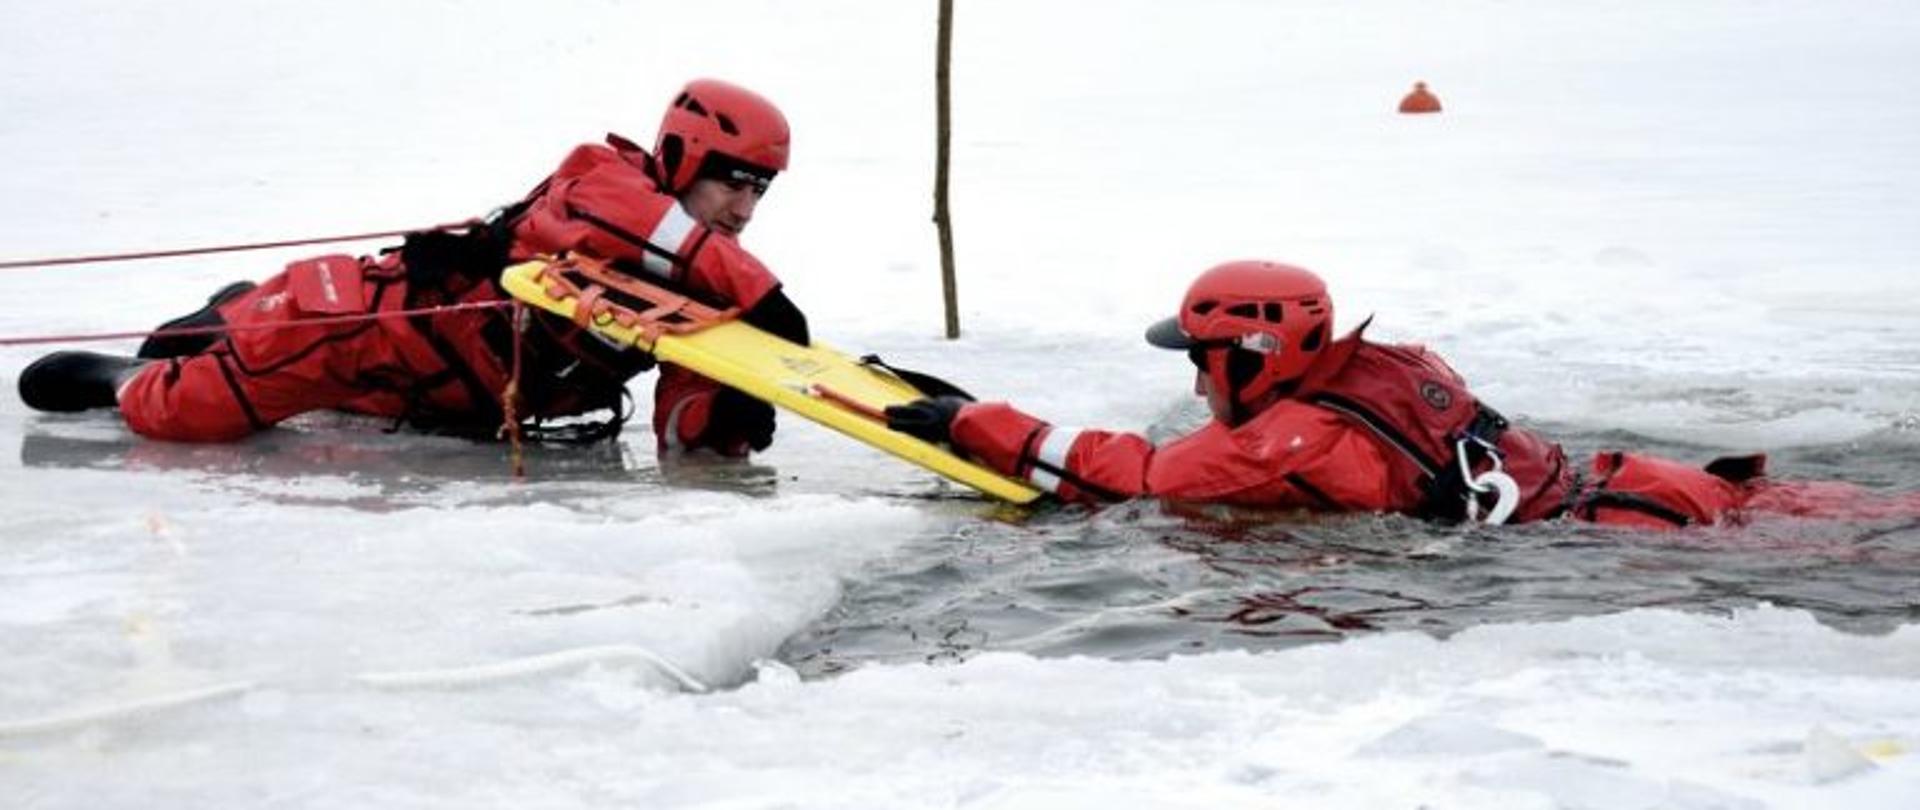 Zdjęcie przedstawia dwóch strażaków ubranych w skafandry suche oraz kaski. Jeden ze strażaków znajduje się w wodzie, natomiast drugi leży w wodzie i za pomocą deski ratowniczej próbuje wyciągnąć go z wody. Tło stanowi śnieg